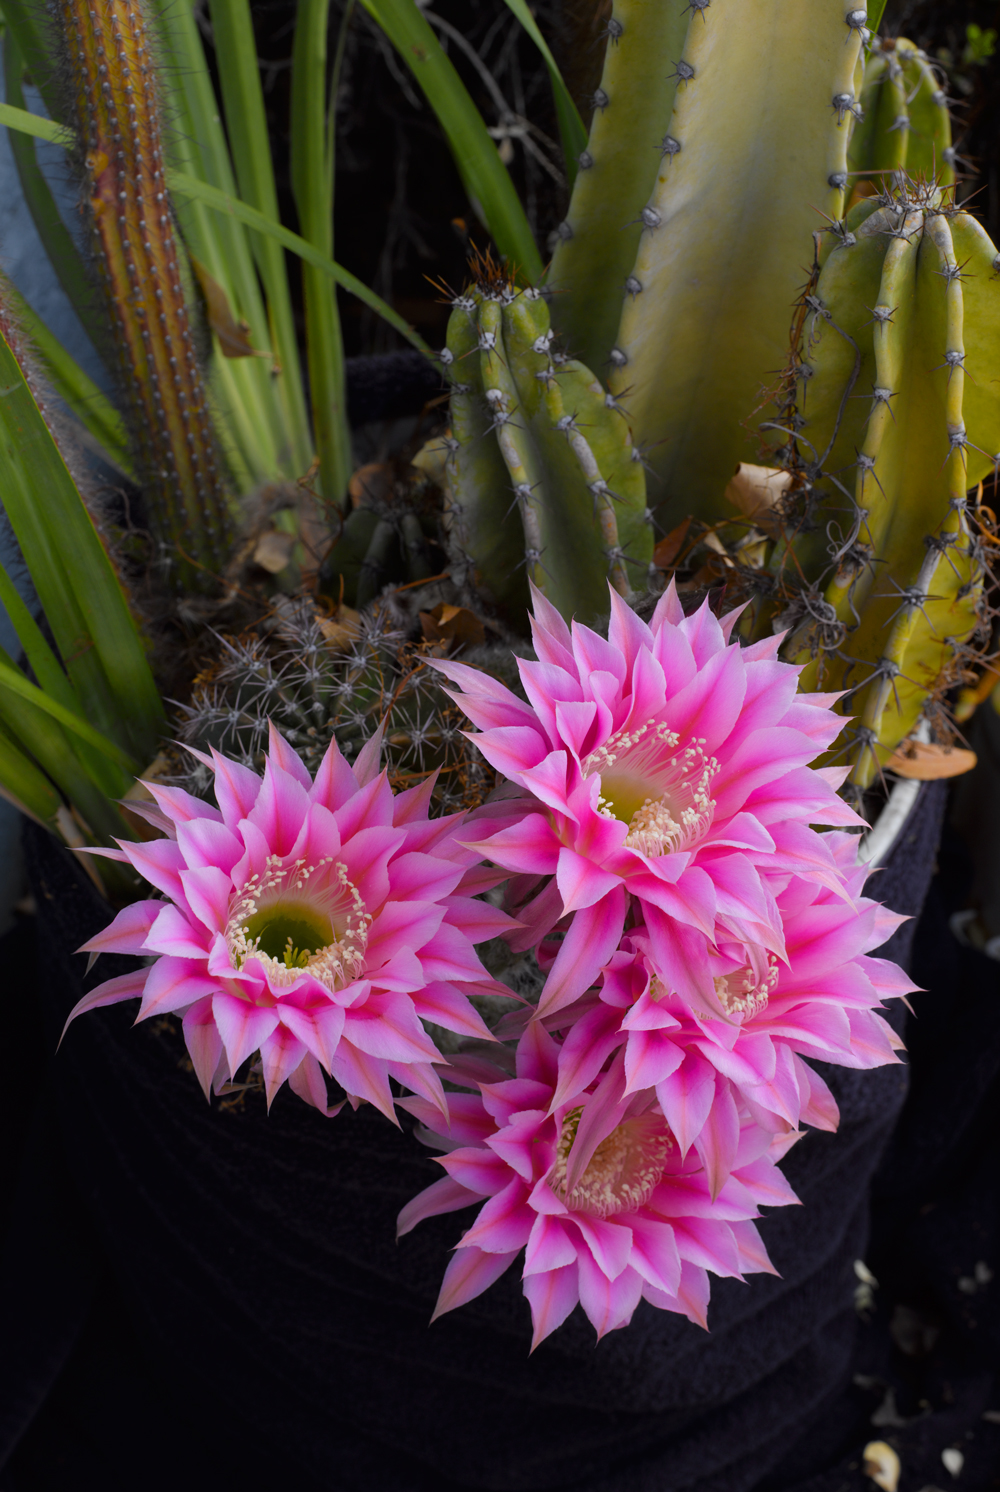 Richard Lund flower picture, desert flower, cactus flower